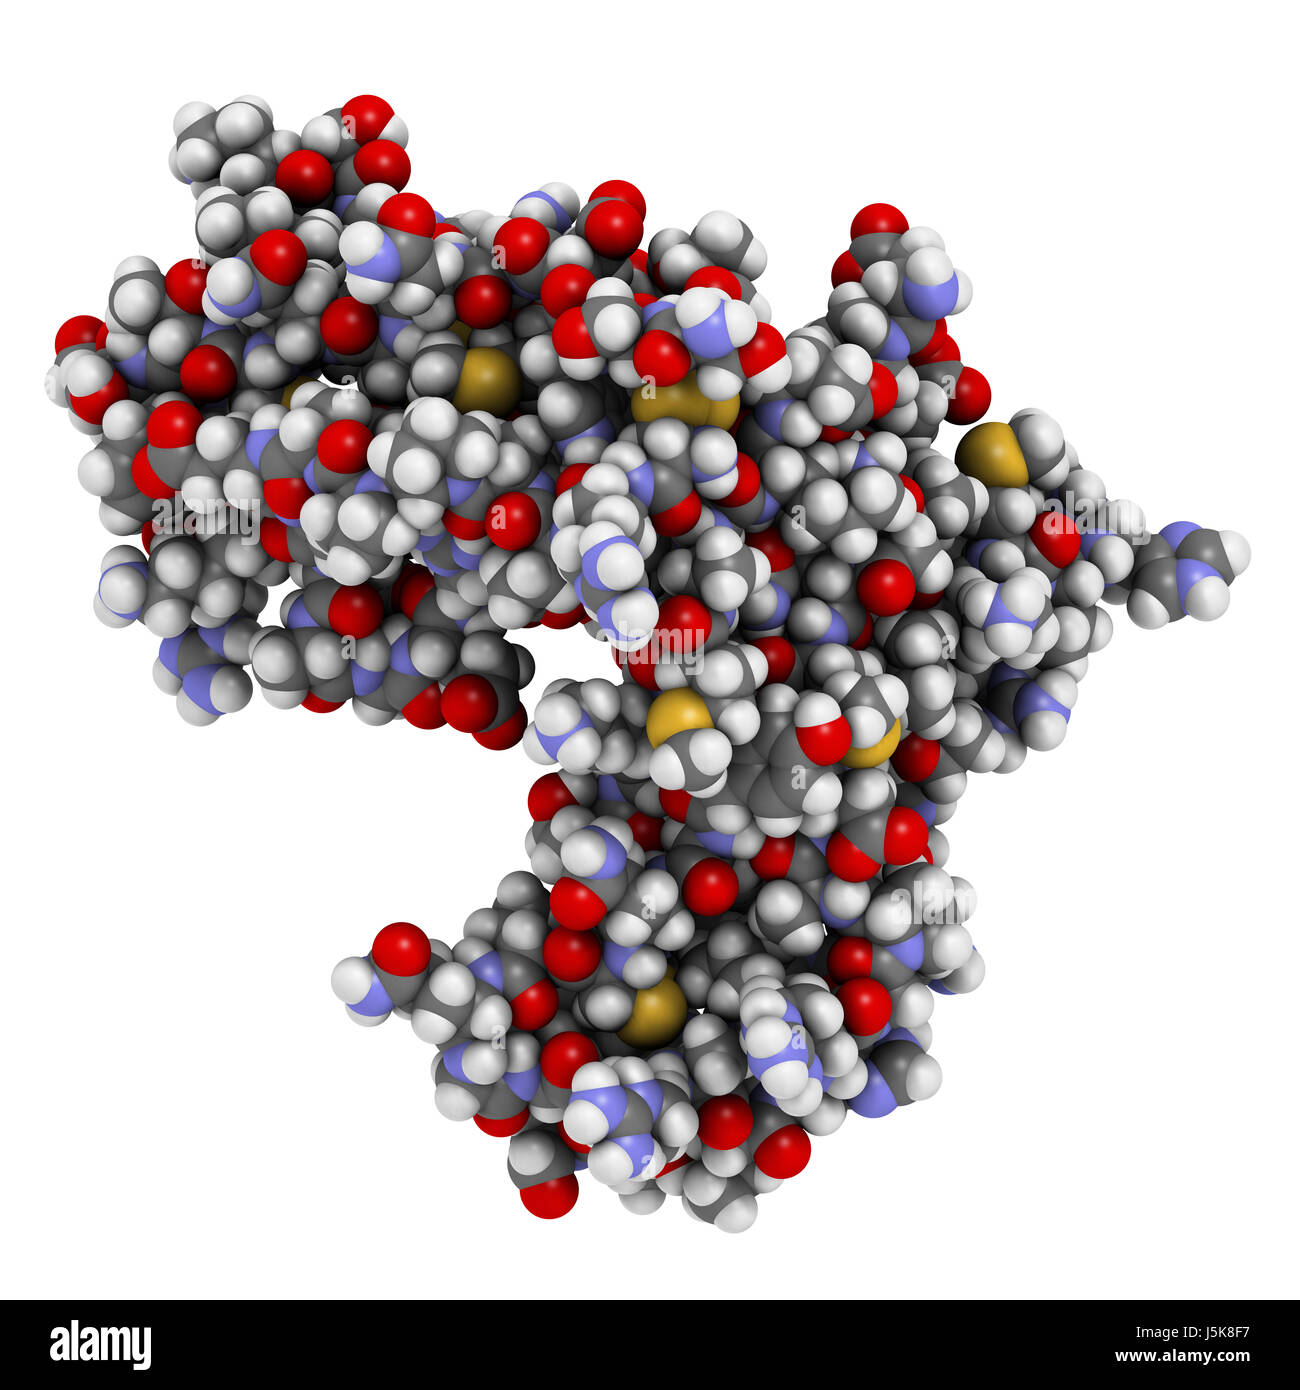 La chaîne alpha du récepteur de l'interleukine-2 (CD25, domaine extracellulaire). CD25 est la cible de l'anticorps monoclonal daclizumab des drogues. Banque D'Images